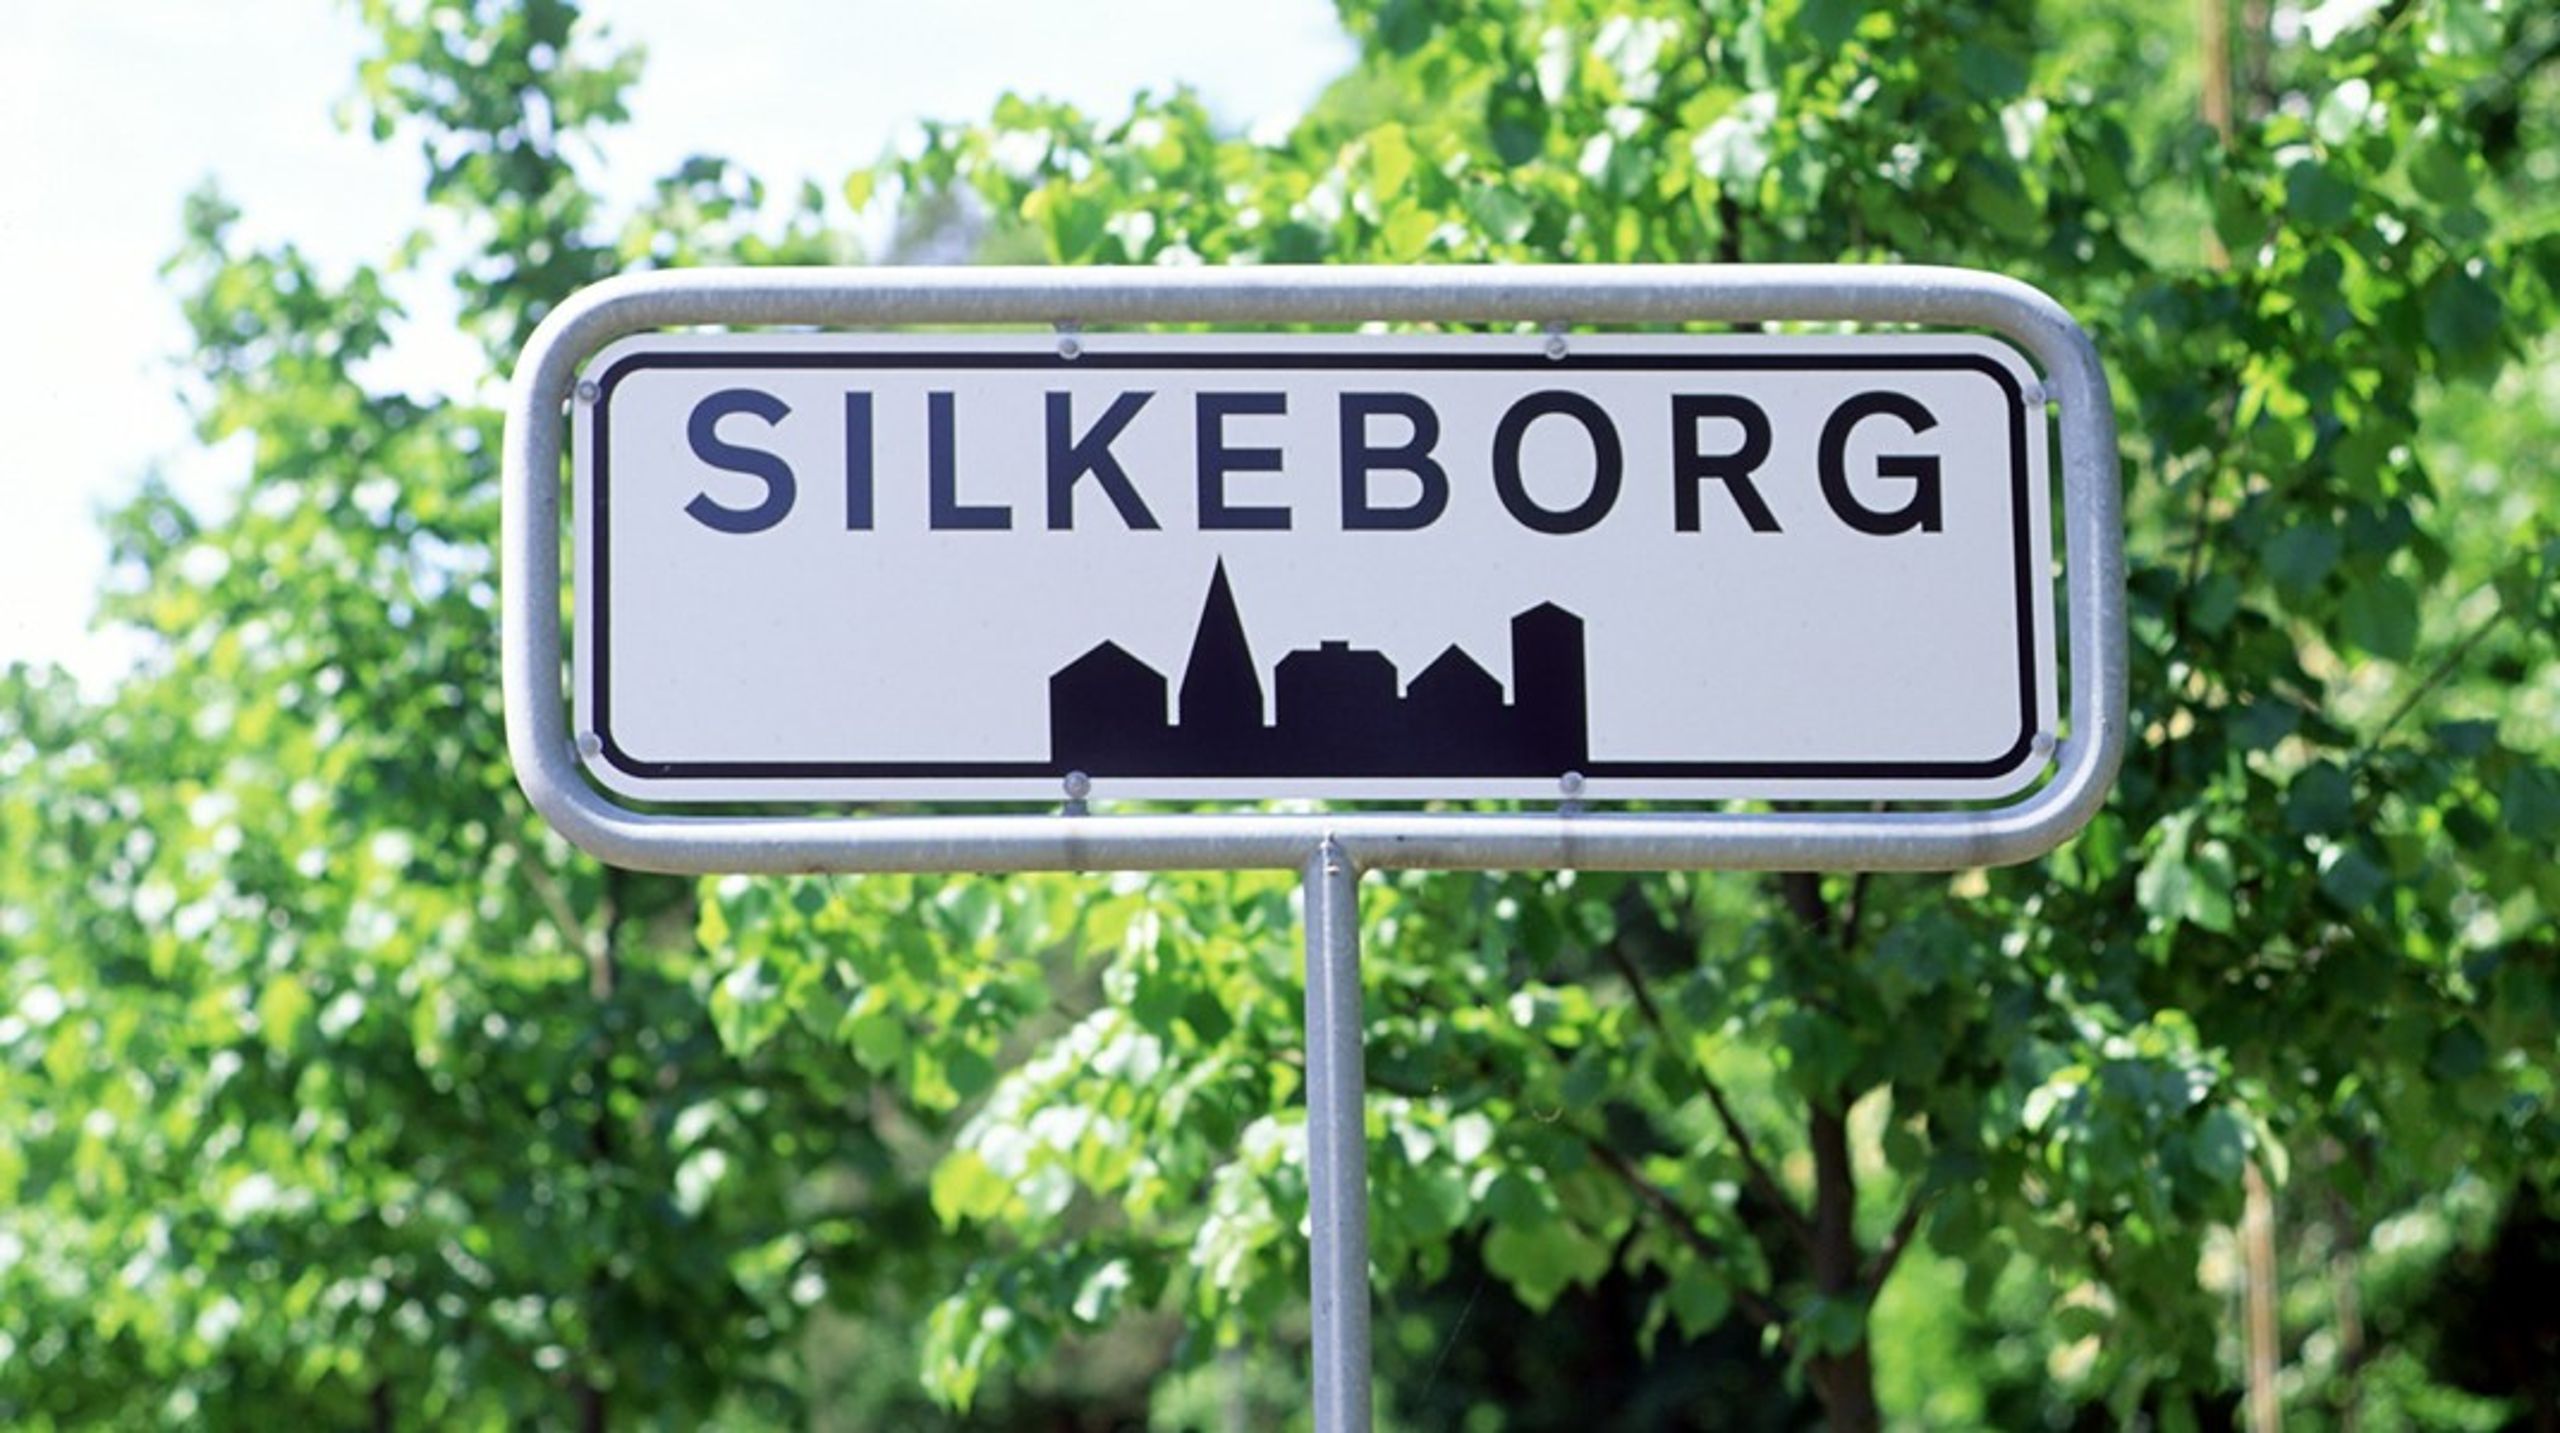 Ifølge mediet Dit Silkeborg har FGU-skolen i Silkeborg har fået et påbud af Arbejdstilsynet på grund af problemer med krænkende adfærd. I mediets dækning henviser skolens&nbsp;arbejdsmiljørepræsentant til&nbsp;Janne Mylins opførelse som årsagen.